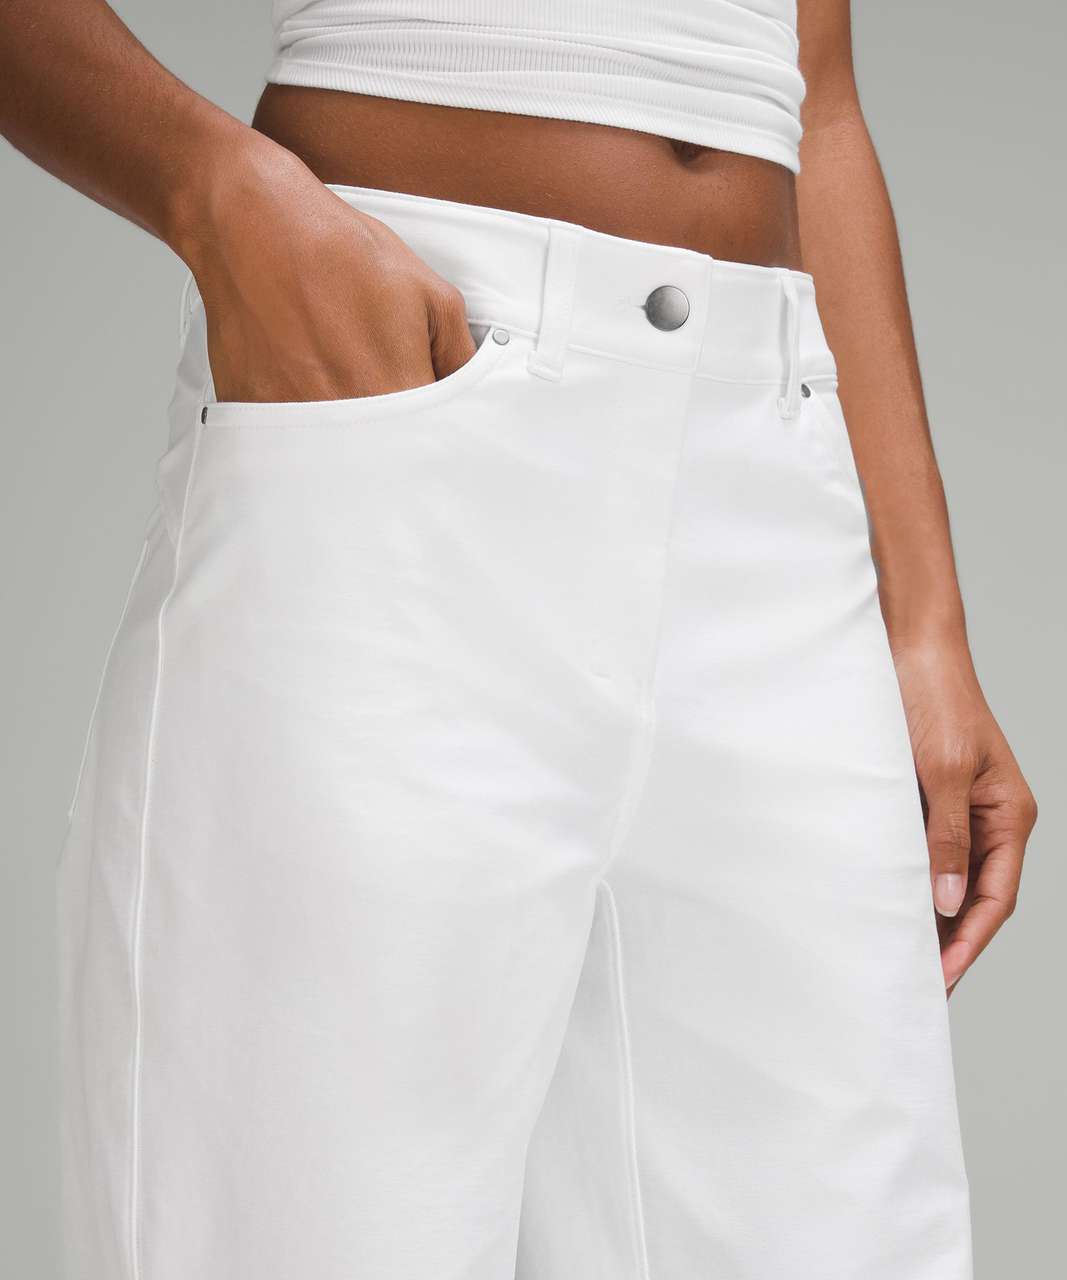 Lululemon City Sleek 5 Pocket High-Rise Wide-Leg Pant Full Length *Light Utilitech - White